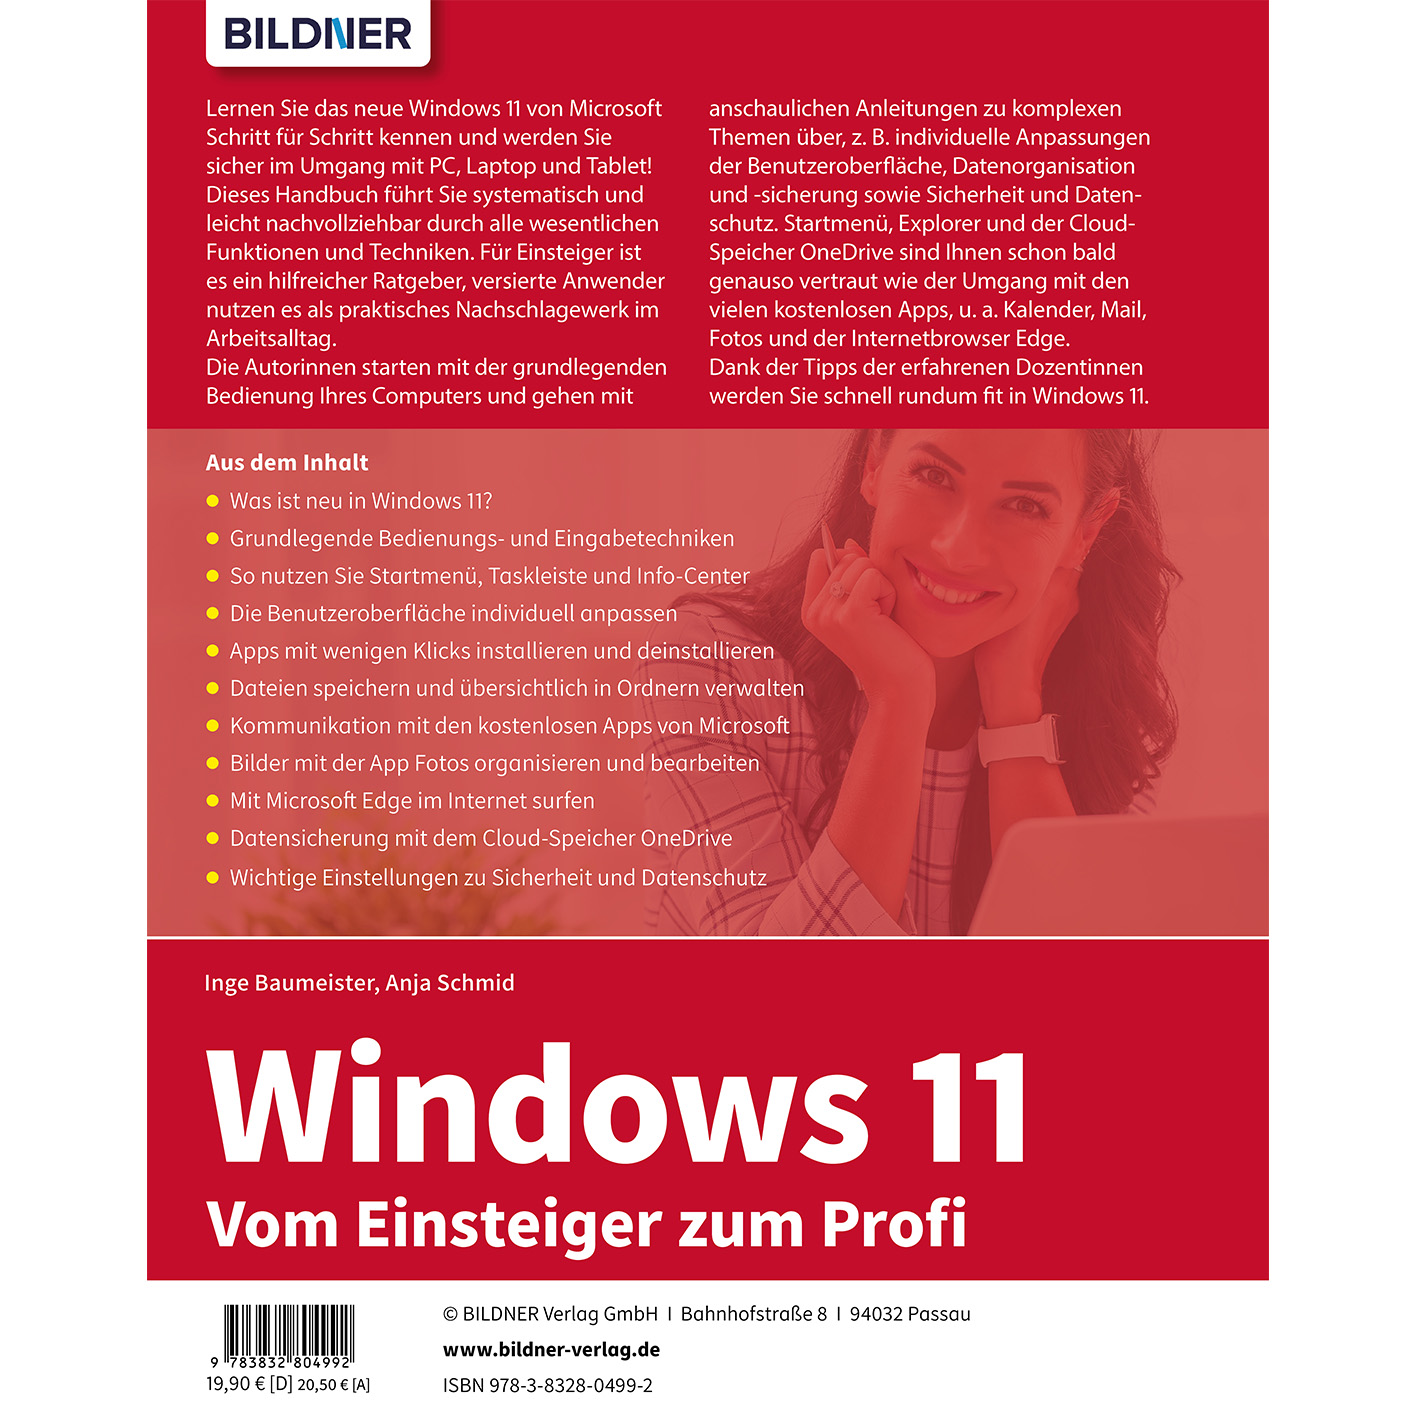 Windows 11 Vom Einsteiger - zum Profi